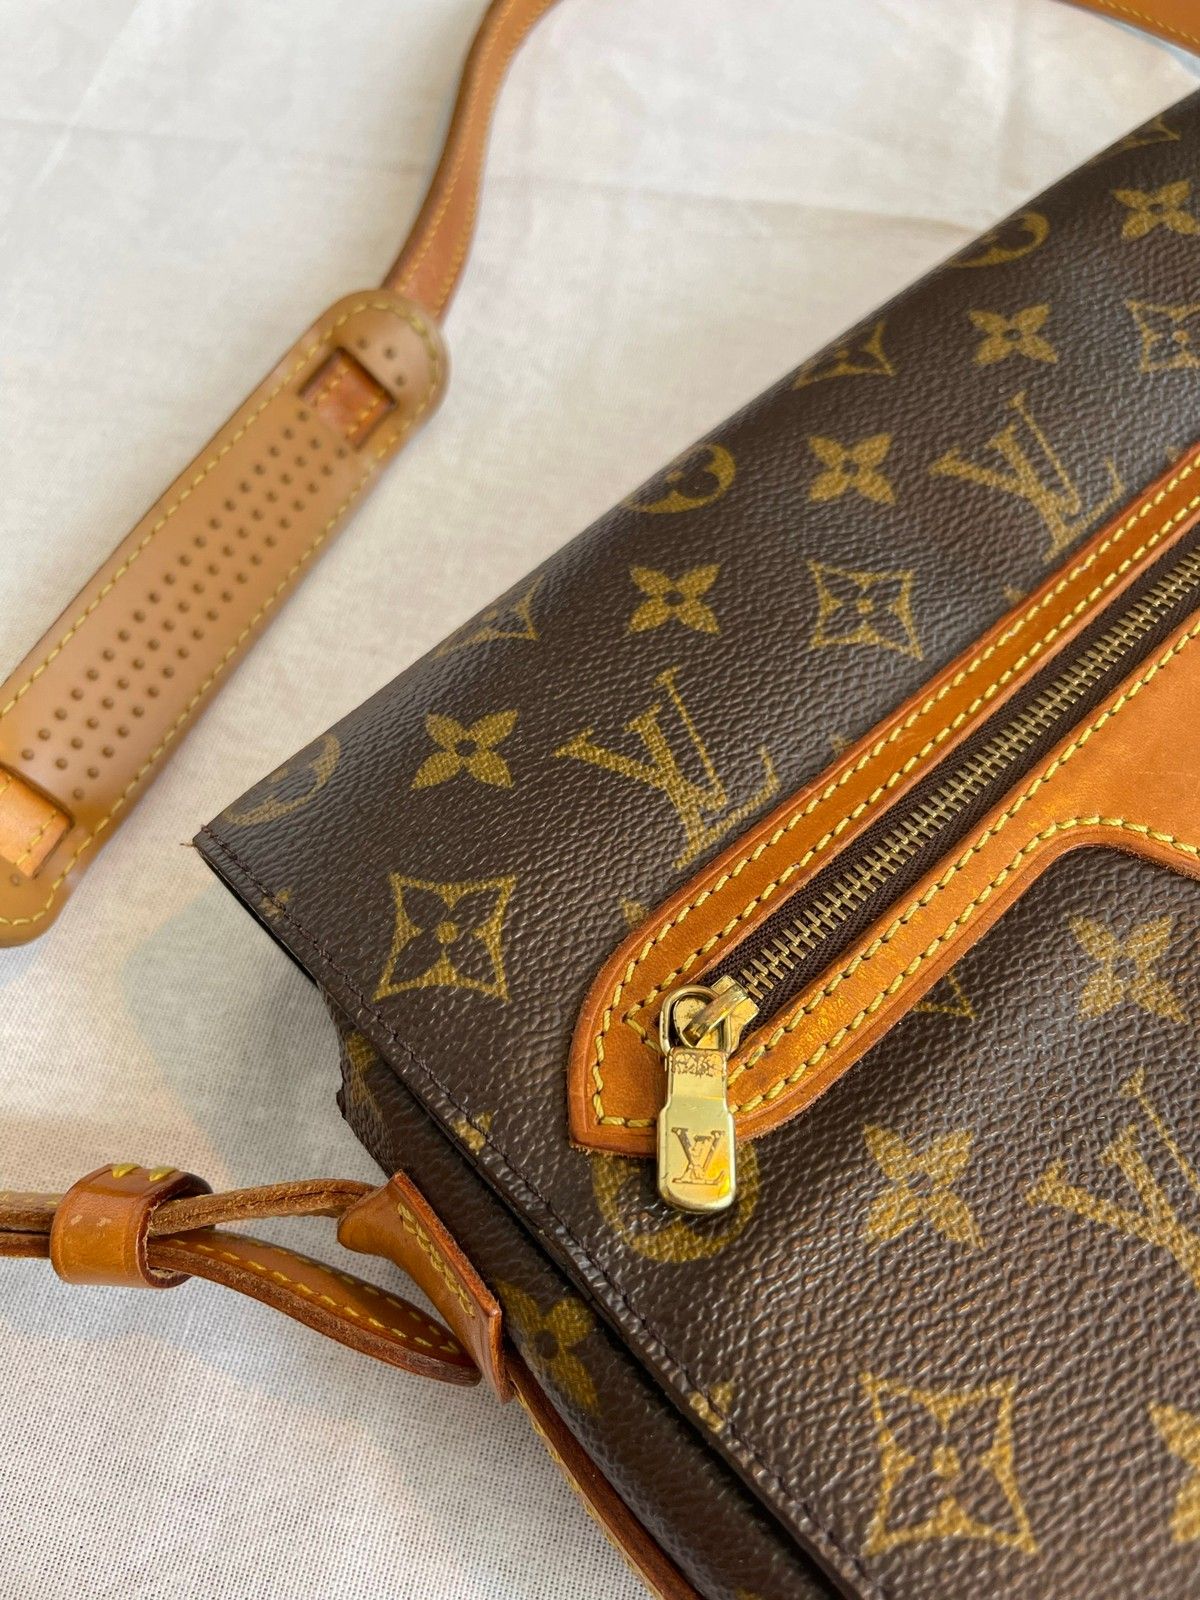 Louis Vuitton Neverfull Handbag 322147